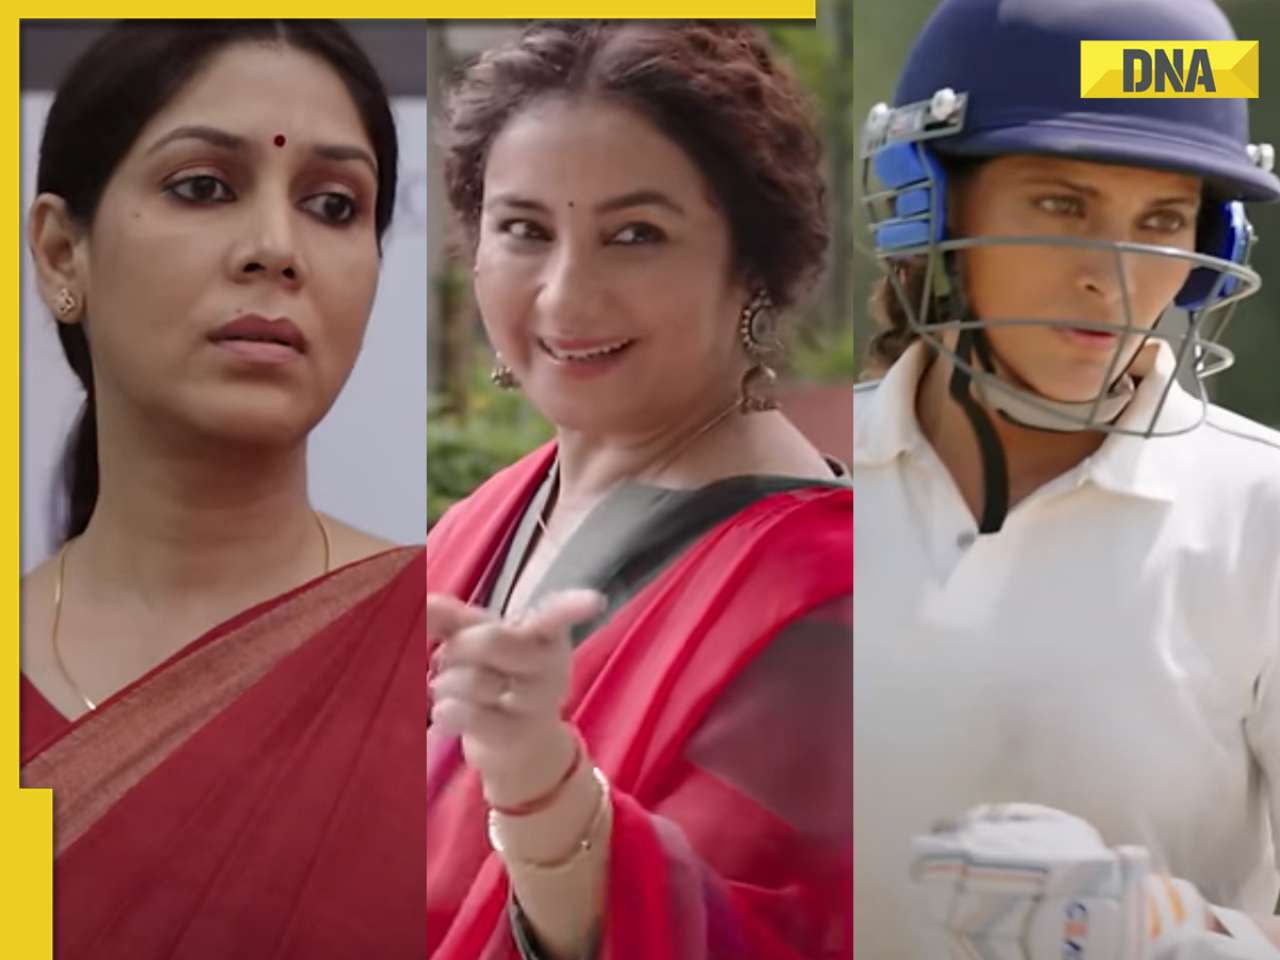 Sharmajee Ki Beti trailer: Sakshi Tanwar, Divya Dutta, Saiyami Kher explore their dreams, navigate societal pressures